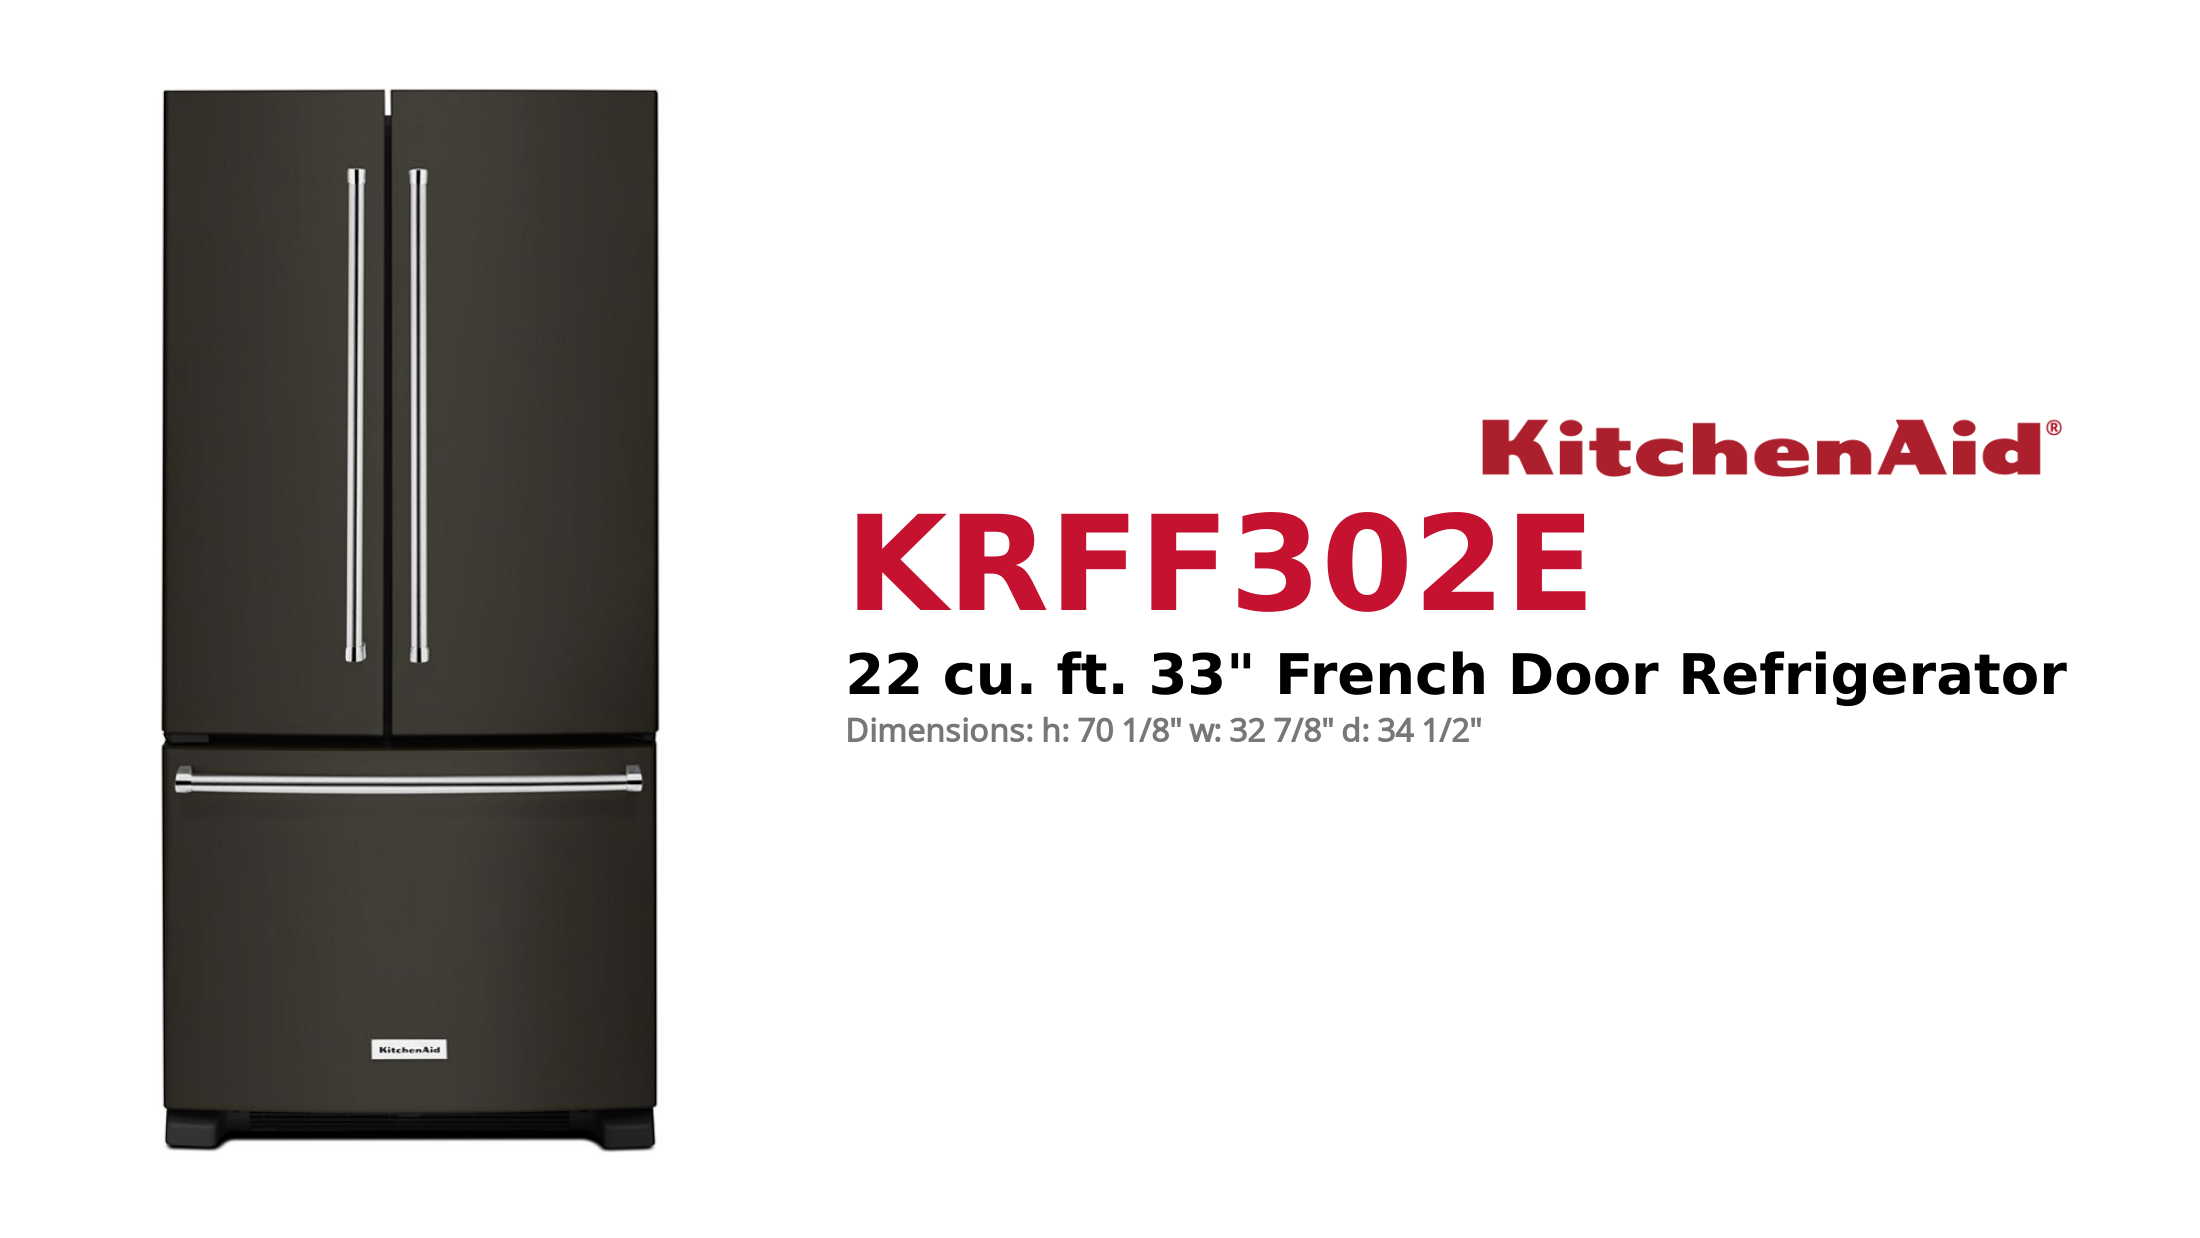 22 cu. ft. 33 French Door Refrigerator